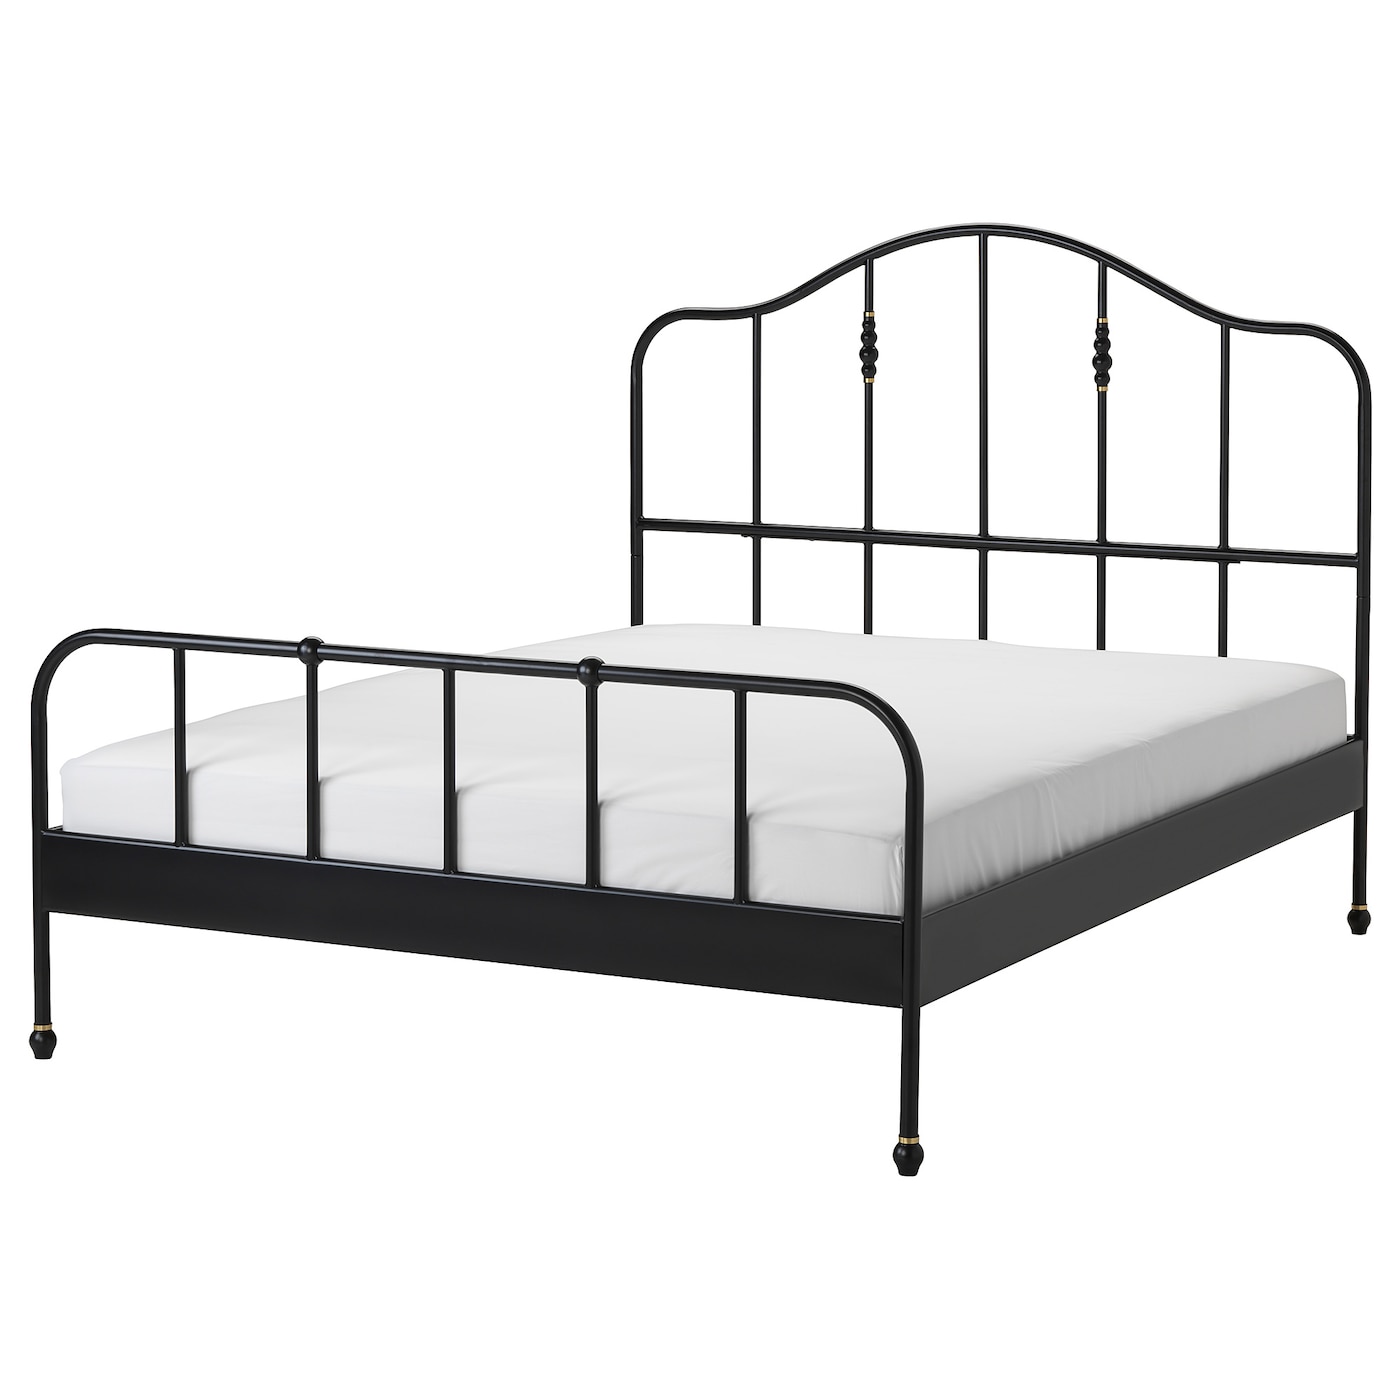 Каркас кровати - IKEA SAGSTUA, 200х160 см, черный, САГСТУА ИКЕА